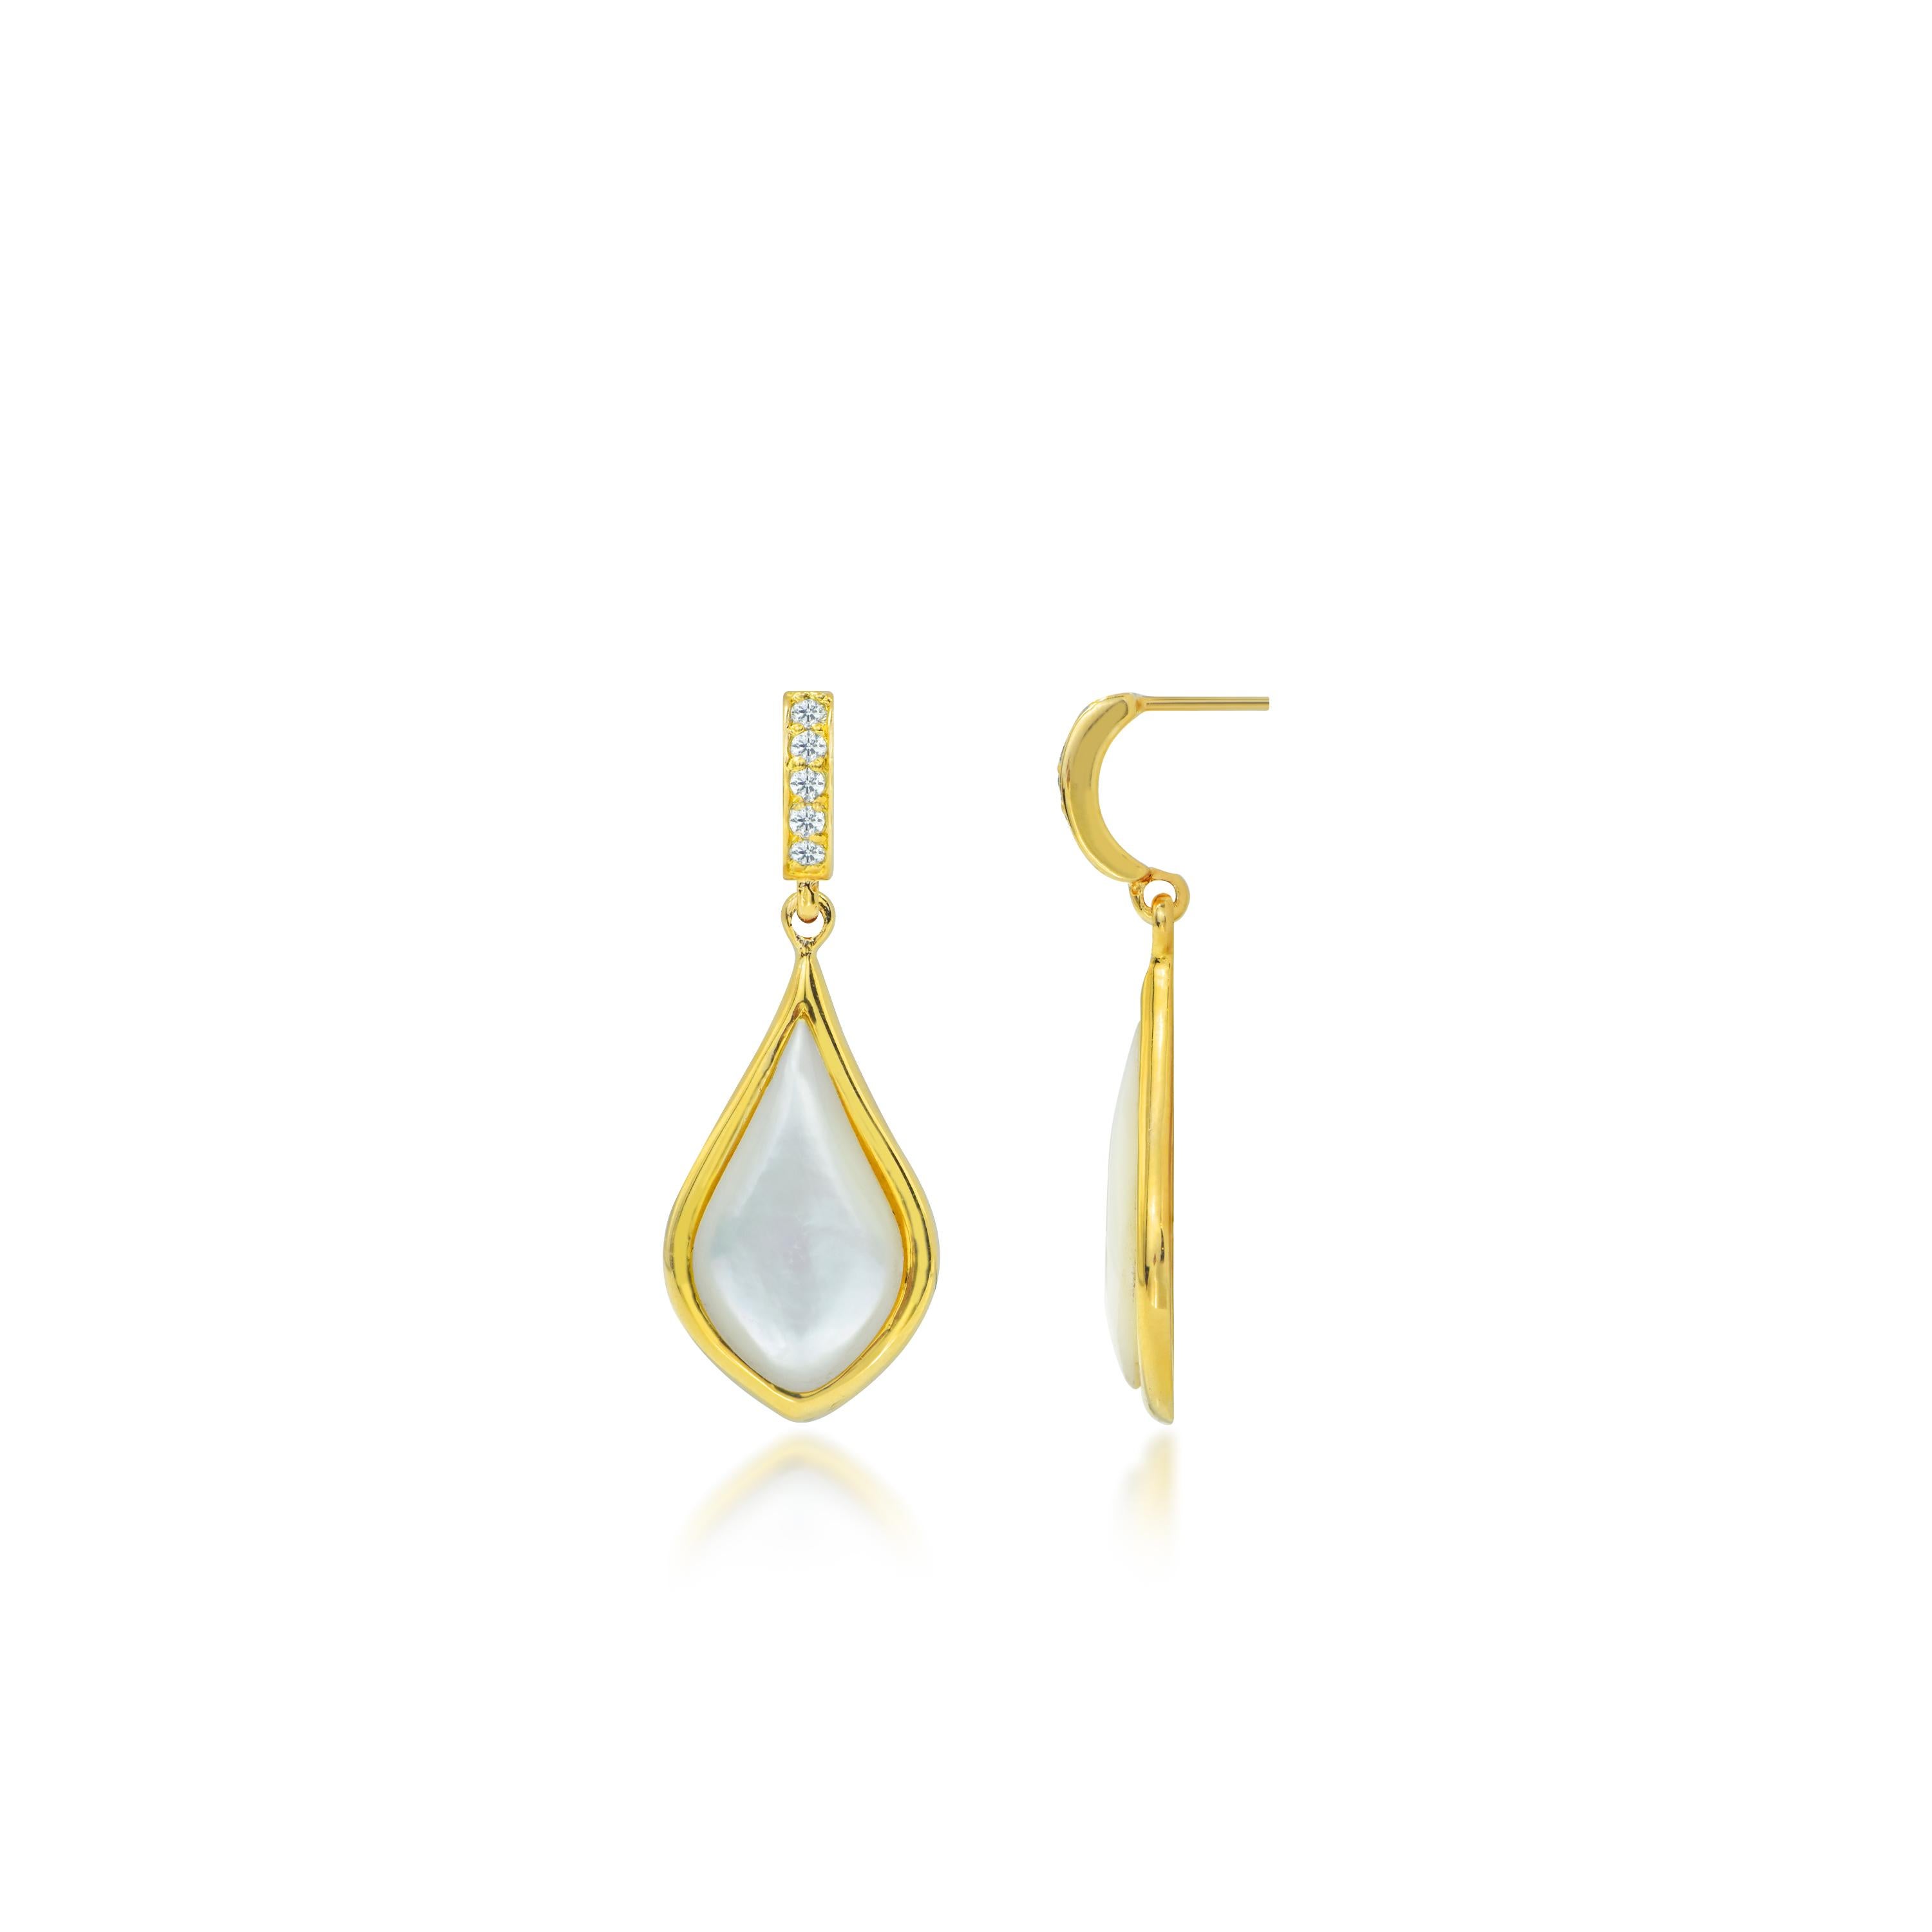 Ajoutez une touche de glamour à votre ensemble avec ces exquises boucles d'oreilles pendantes en or véritable 18 carats. Réalisées en nacre de perle et ornées de zircons naturels, ces boucles d'oreilles rayonnent d'élégance et de sophistication.